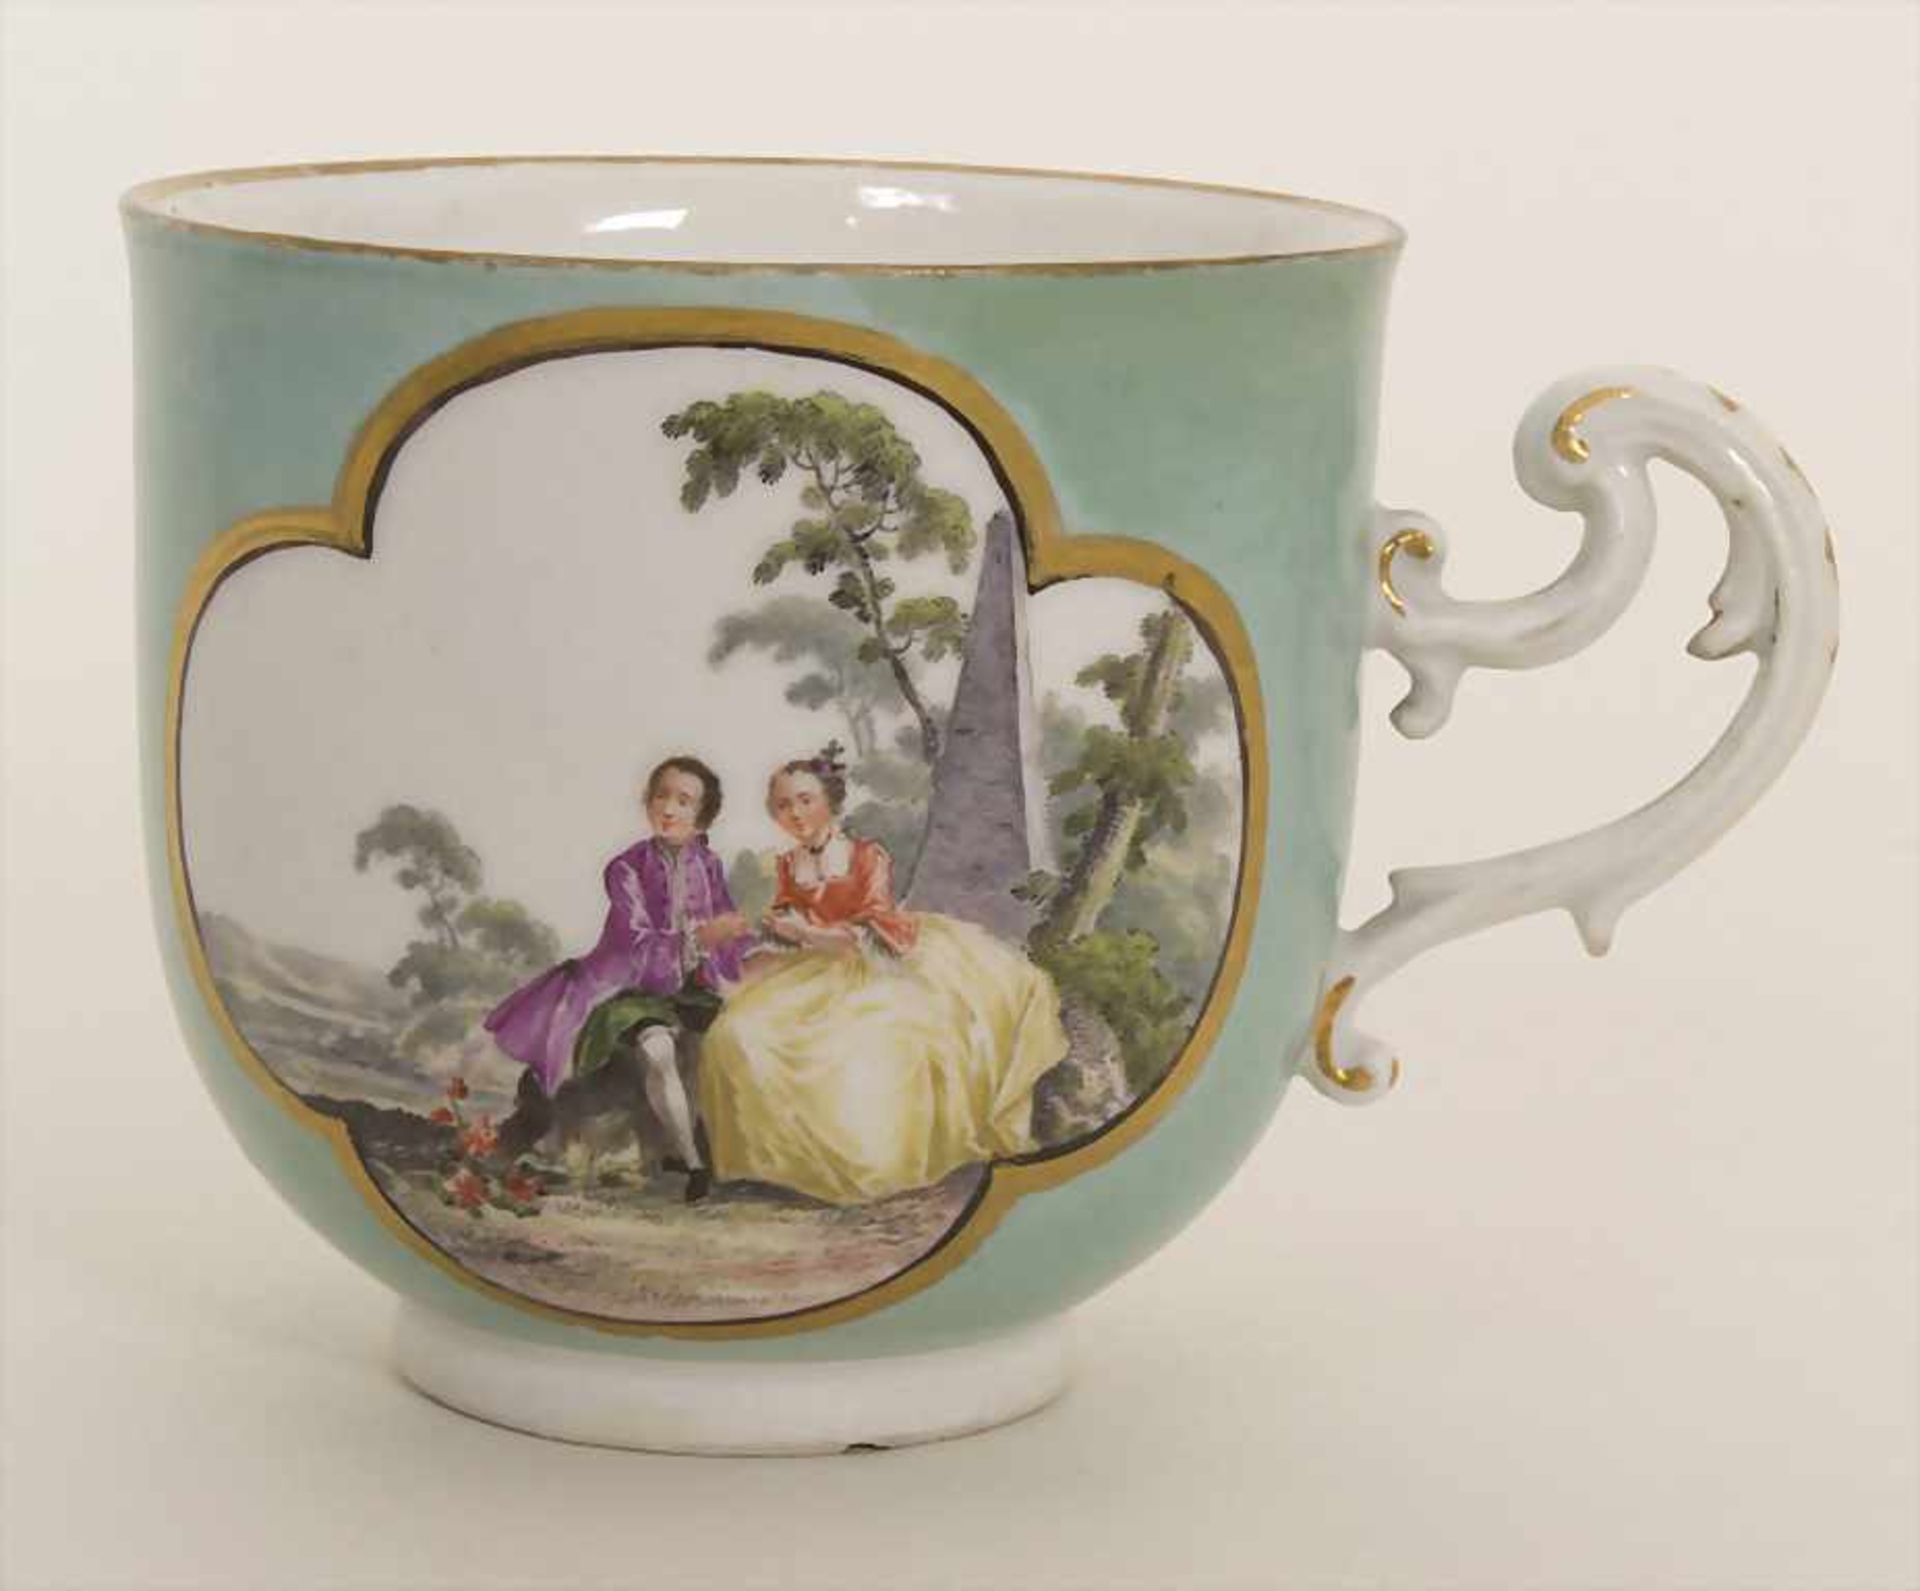 Glockentasse mit galanten Szenen / A cup with courting scenes, Meissen, um 1740Material: